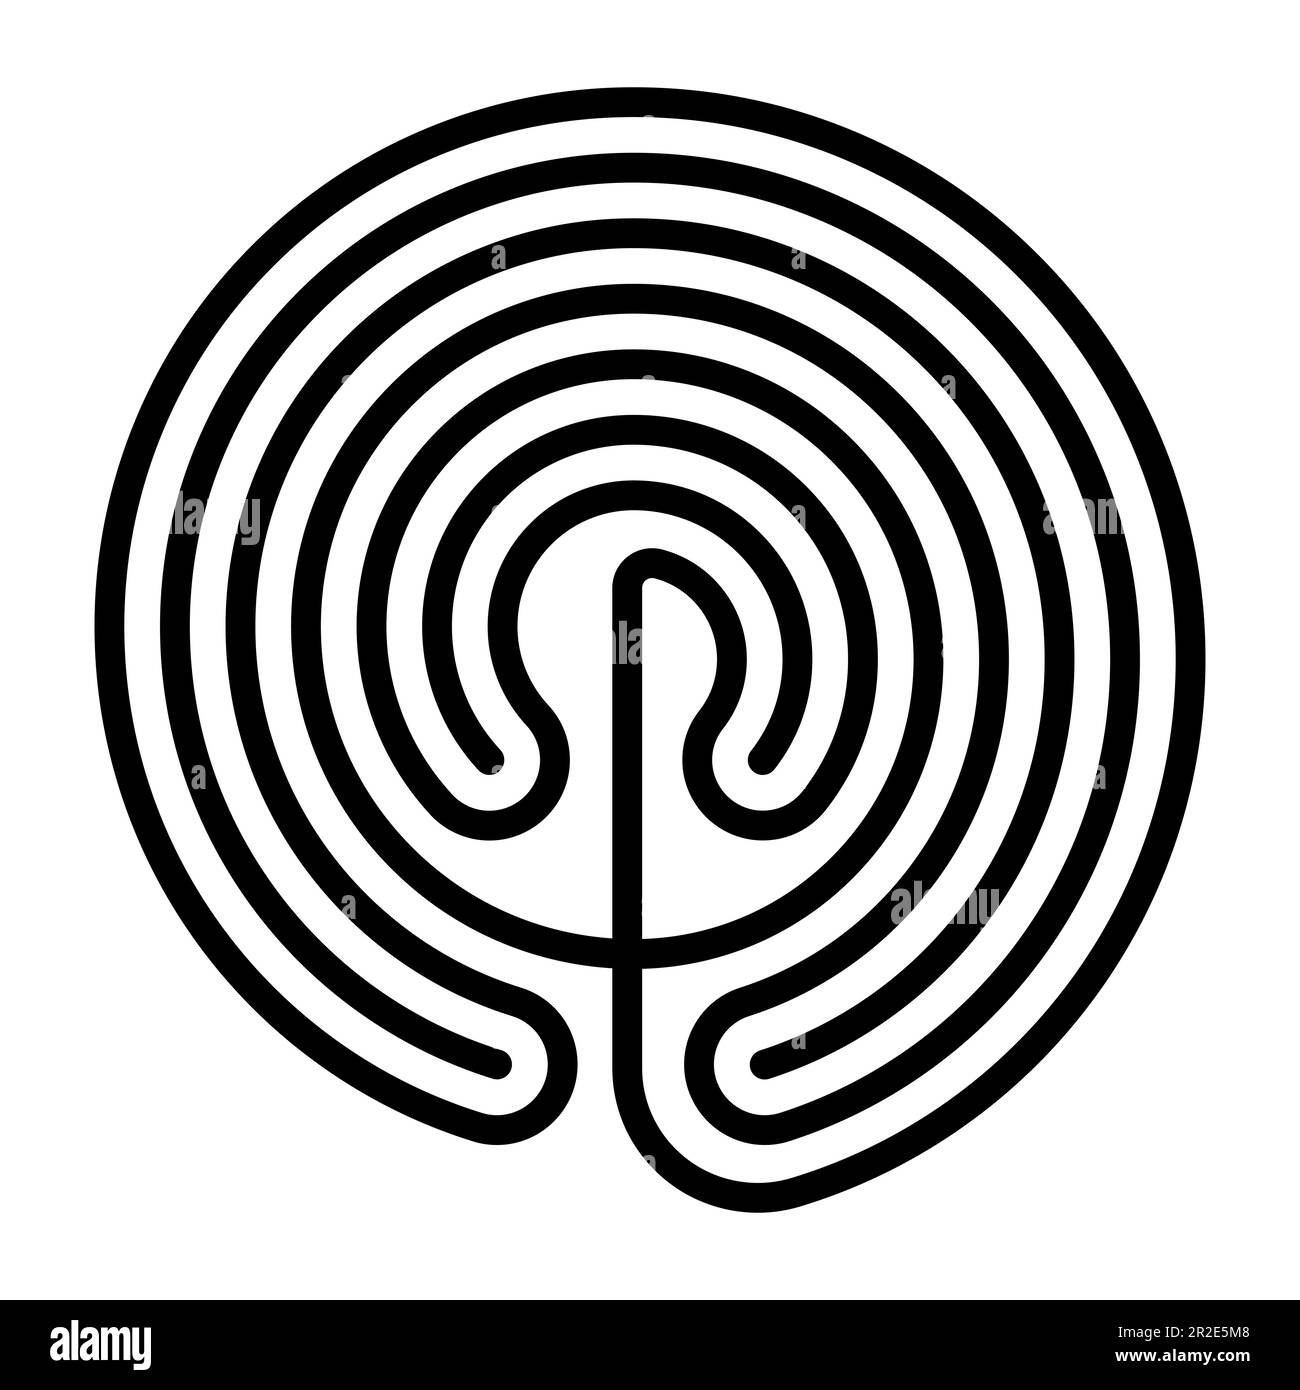 Labyrinthe crétois en forme de cercle. Conception classique d'un seul chemin sur sept parcours, tel qu'illustré sur les pièces d'argent de Knossos. Banque D'Images